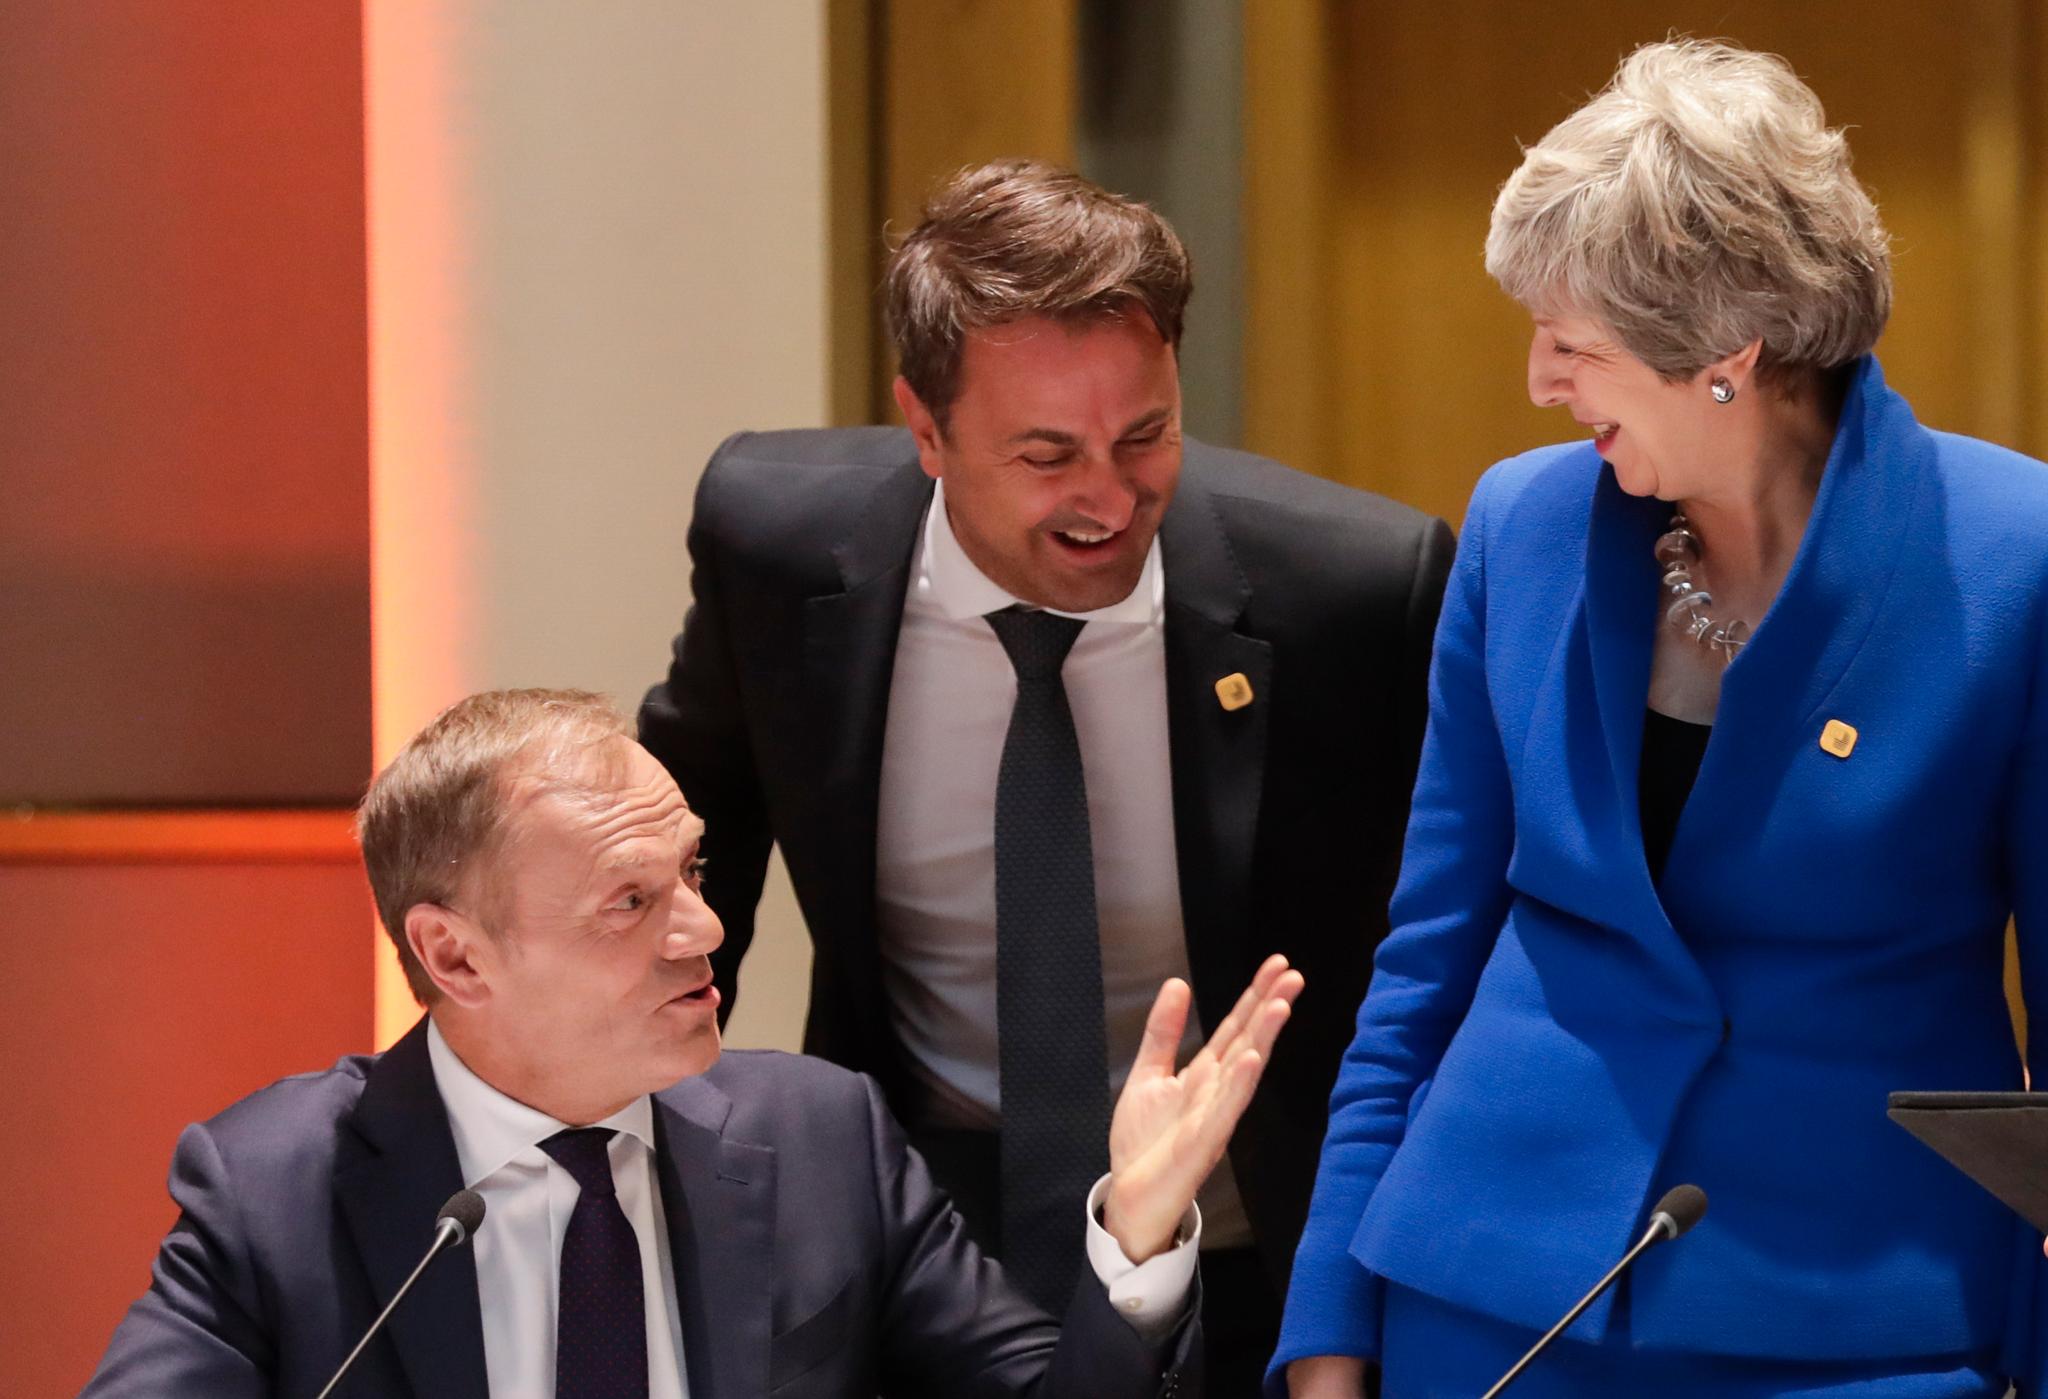 Tilsynelatende god stemning da Theresa May hilste på EU-president Donald Tusk og Luxembourgs statsminister Xavier Bettel i Brussel. Men May var ikke til stede da EU-landene bestemte hvor lang utsettelse britene skulle få. 